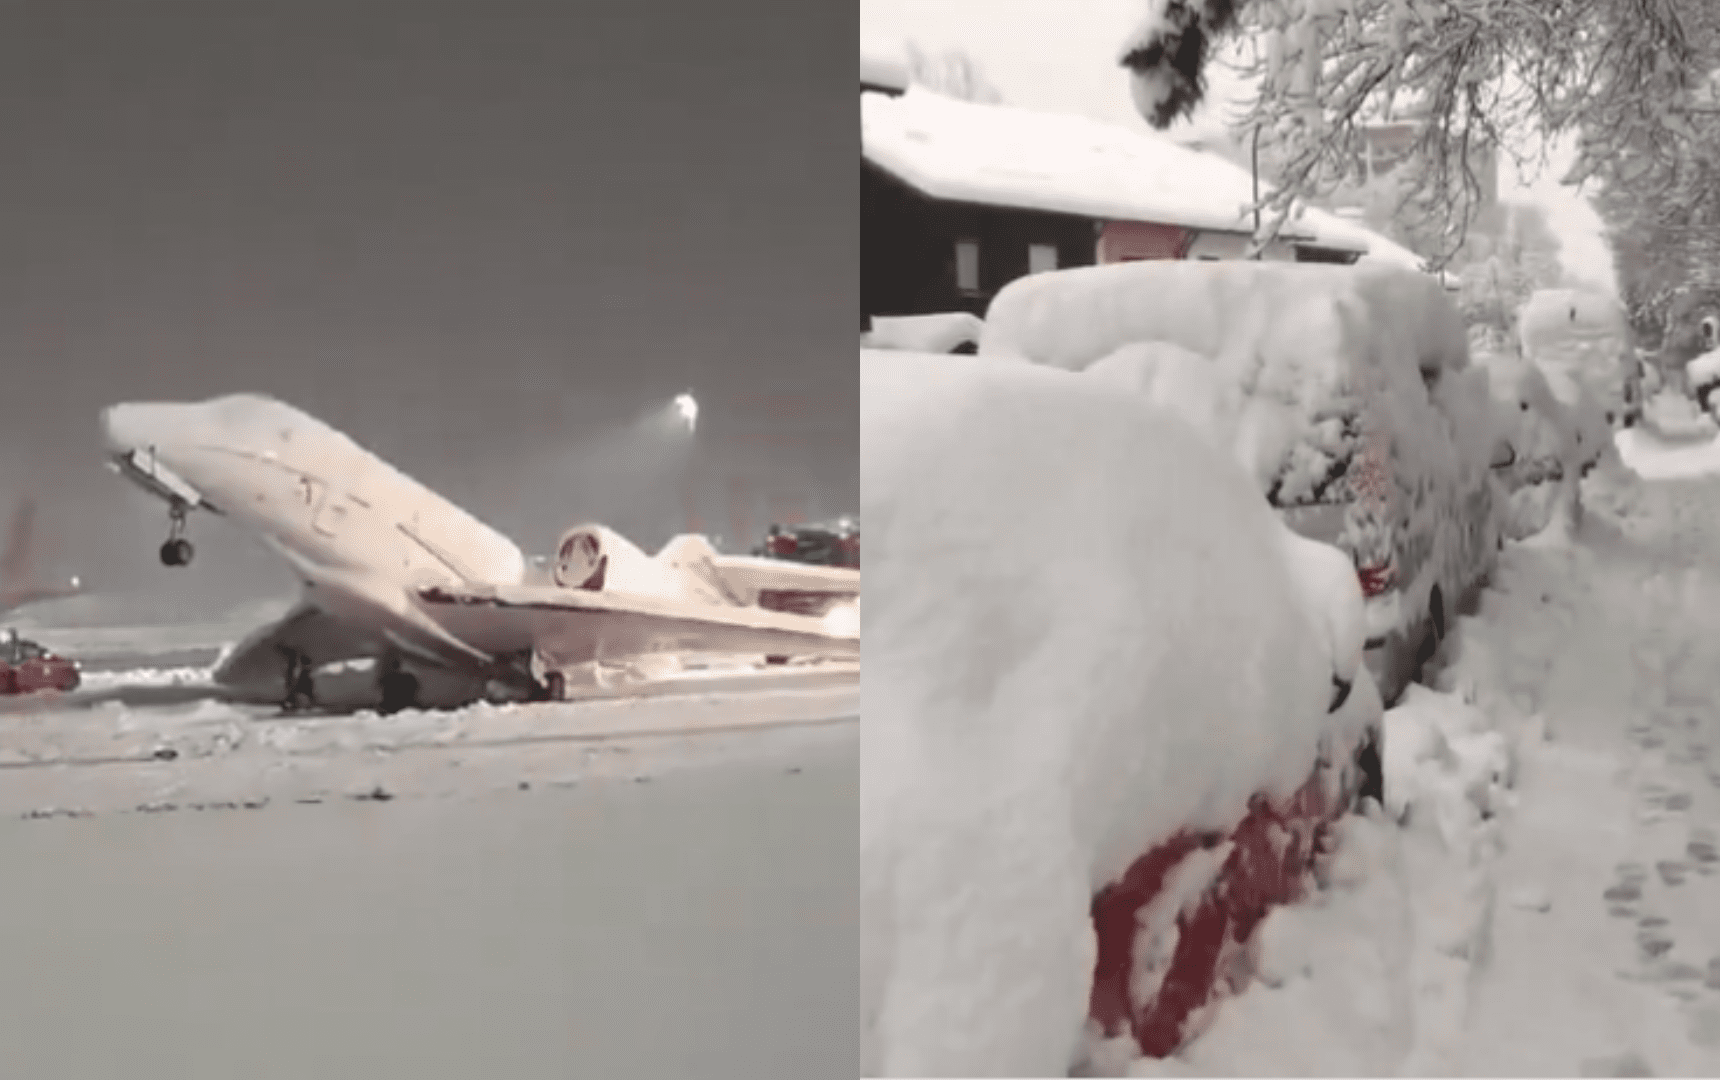 [Video] Aviones quedaron congelados tras intensa nevada en Múnich